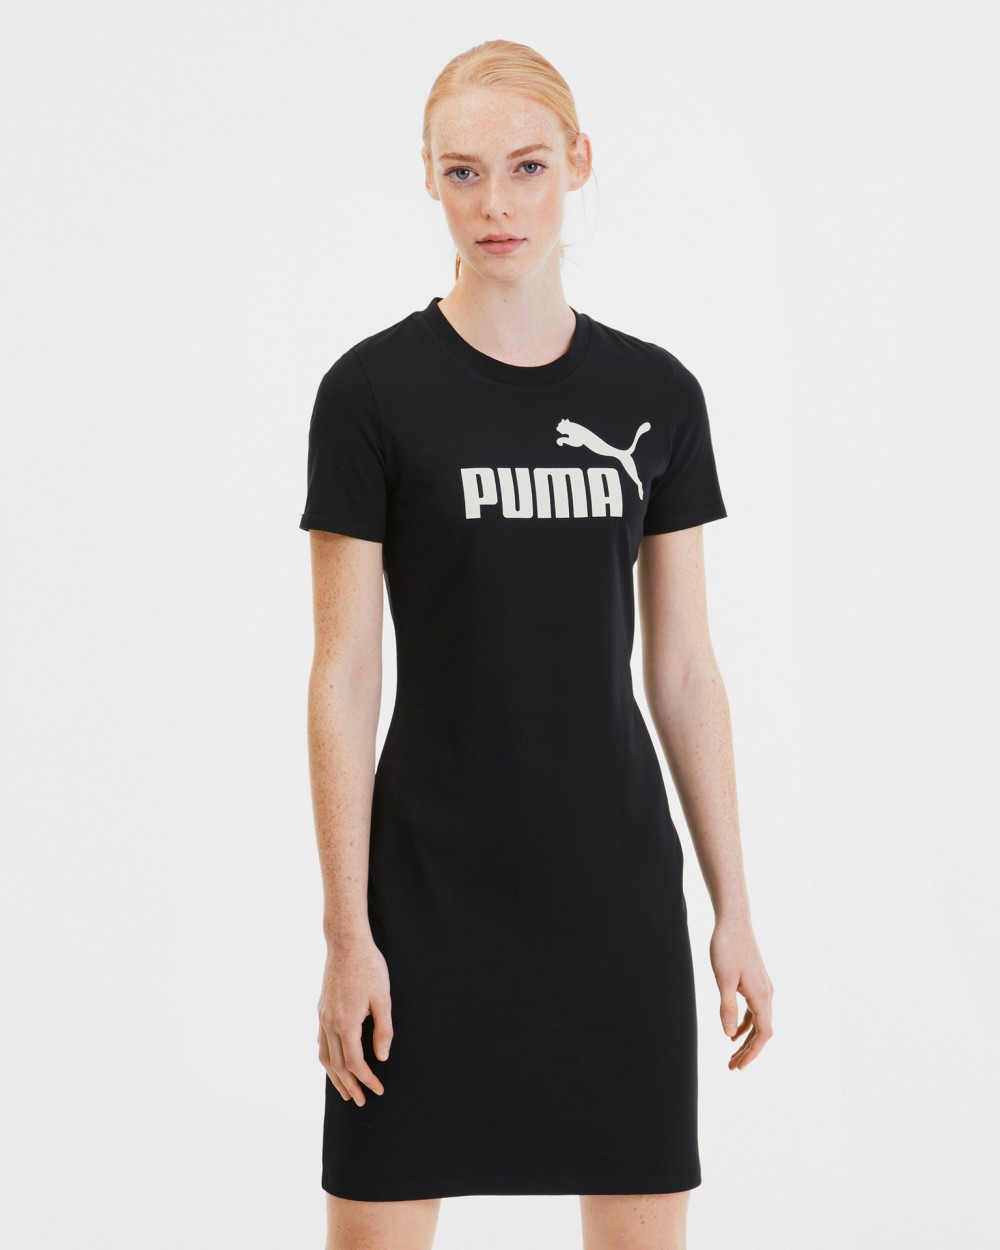 Essential Ruha Puma